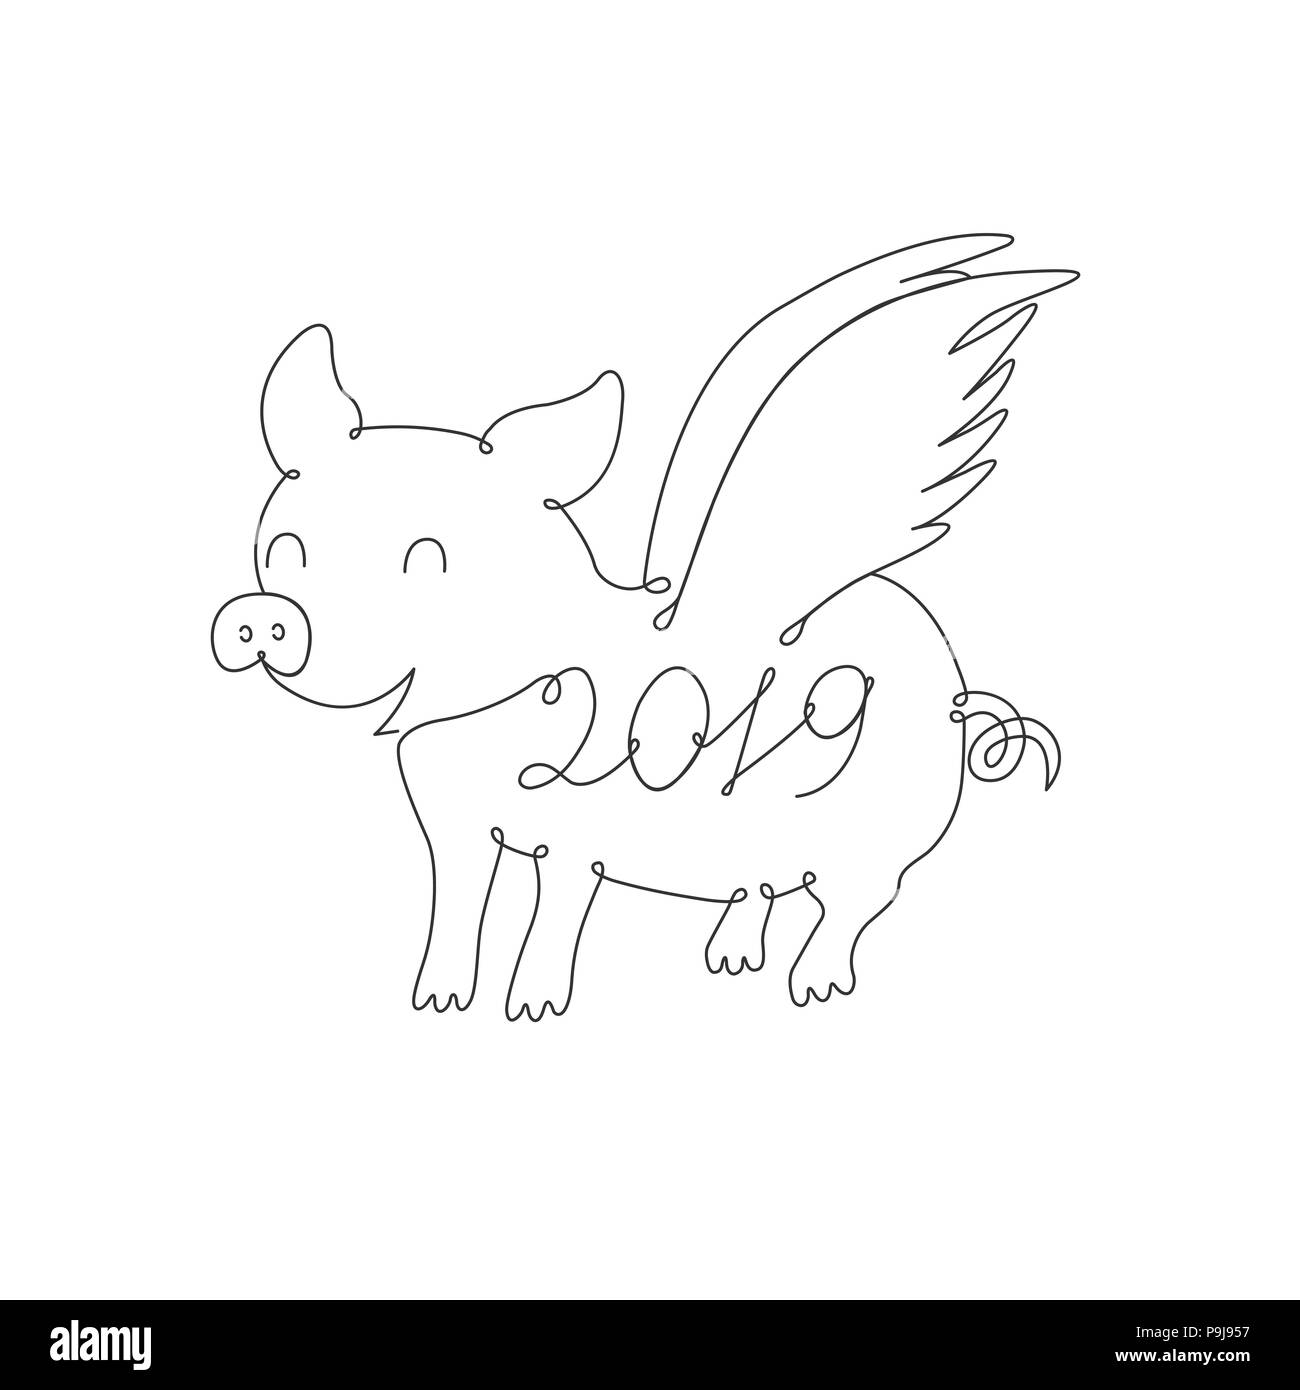 Le symbole de l'année tirée par une ligne Illustration de Vecteur